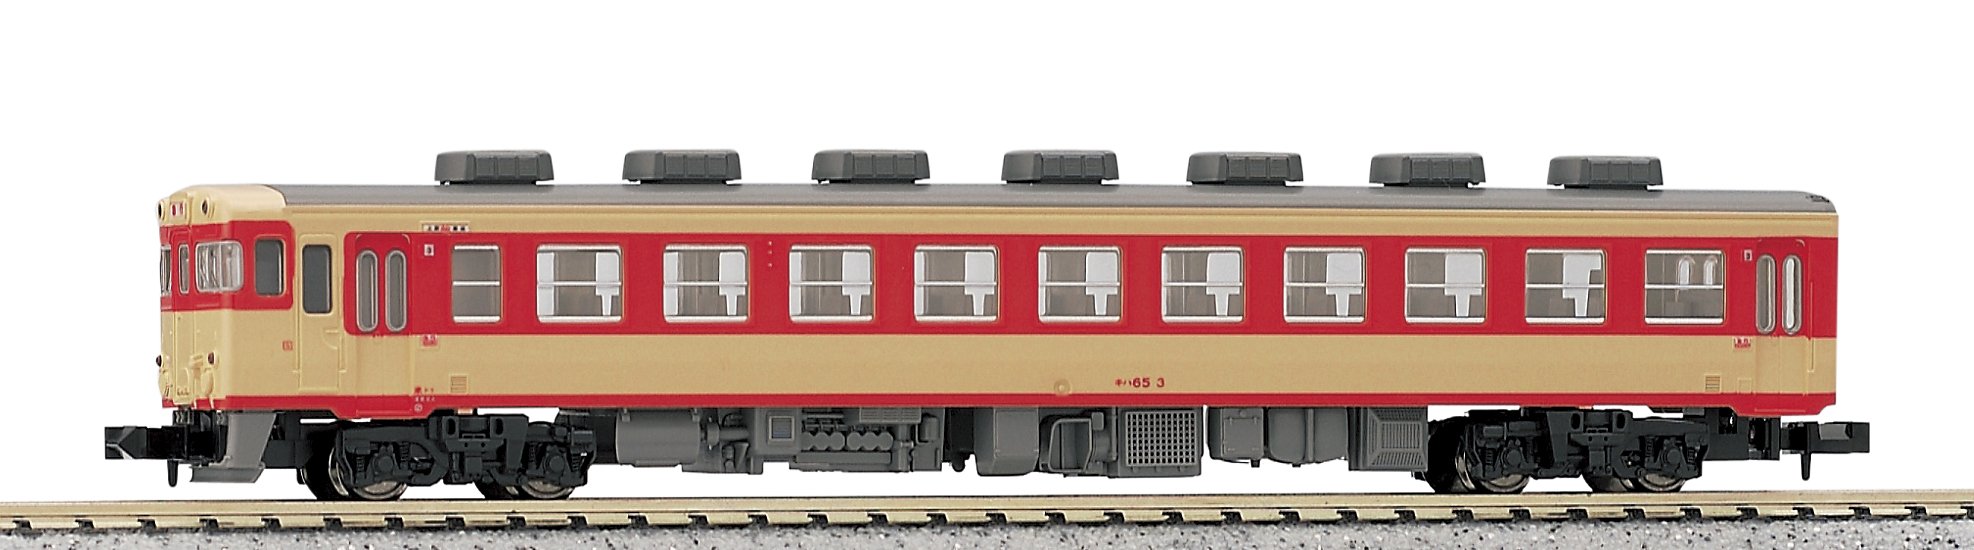 Kato Kiha65 6051 Voiture diesel – Modèle ferroviaire à voie N